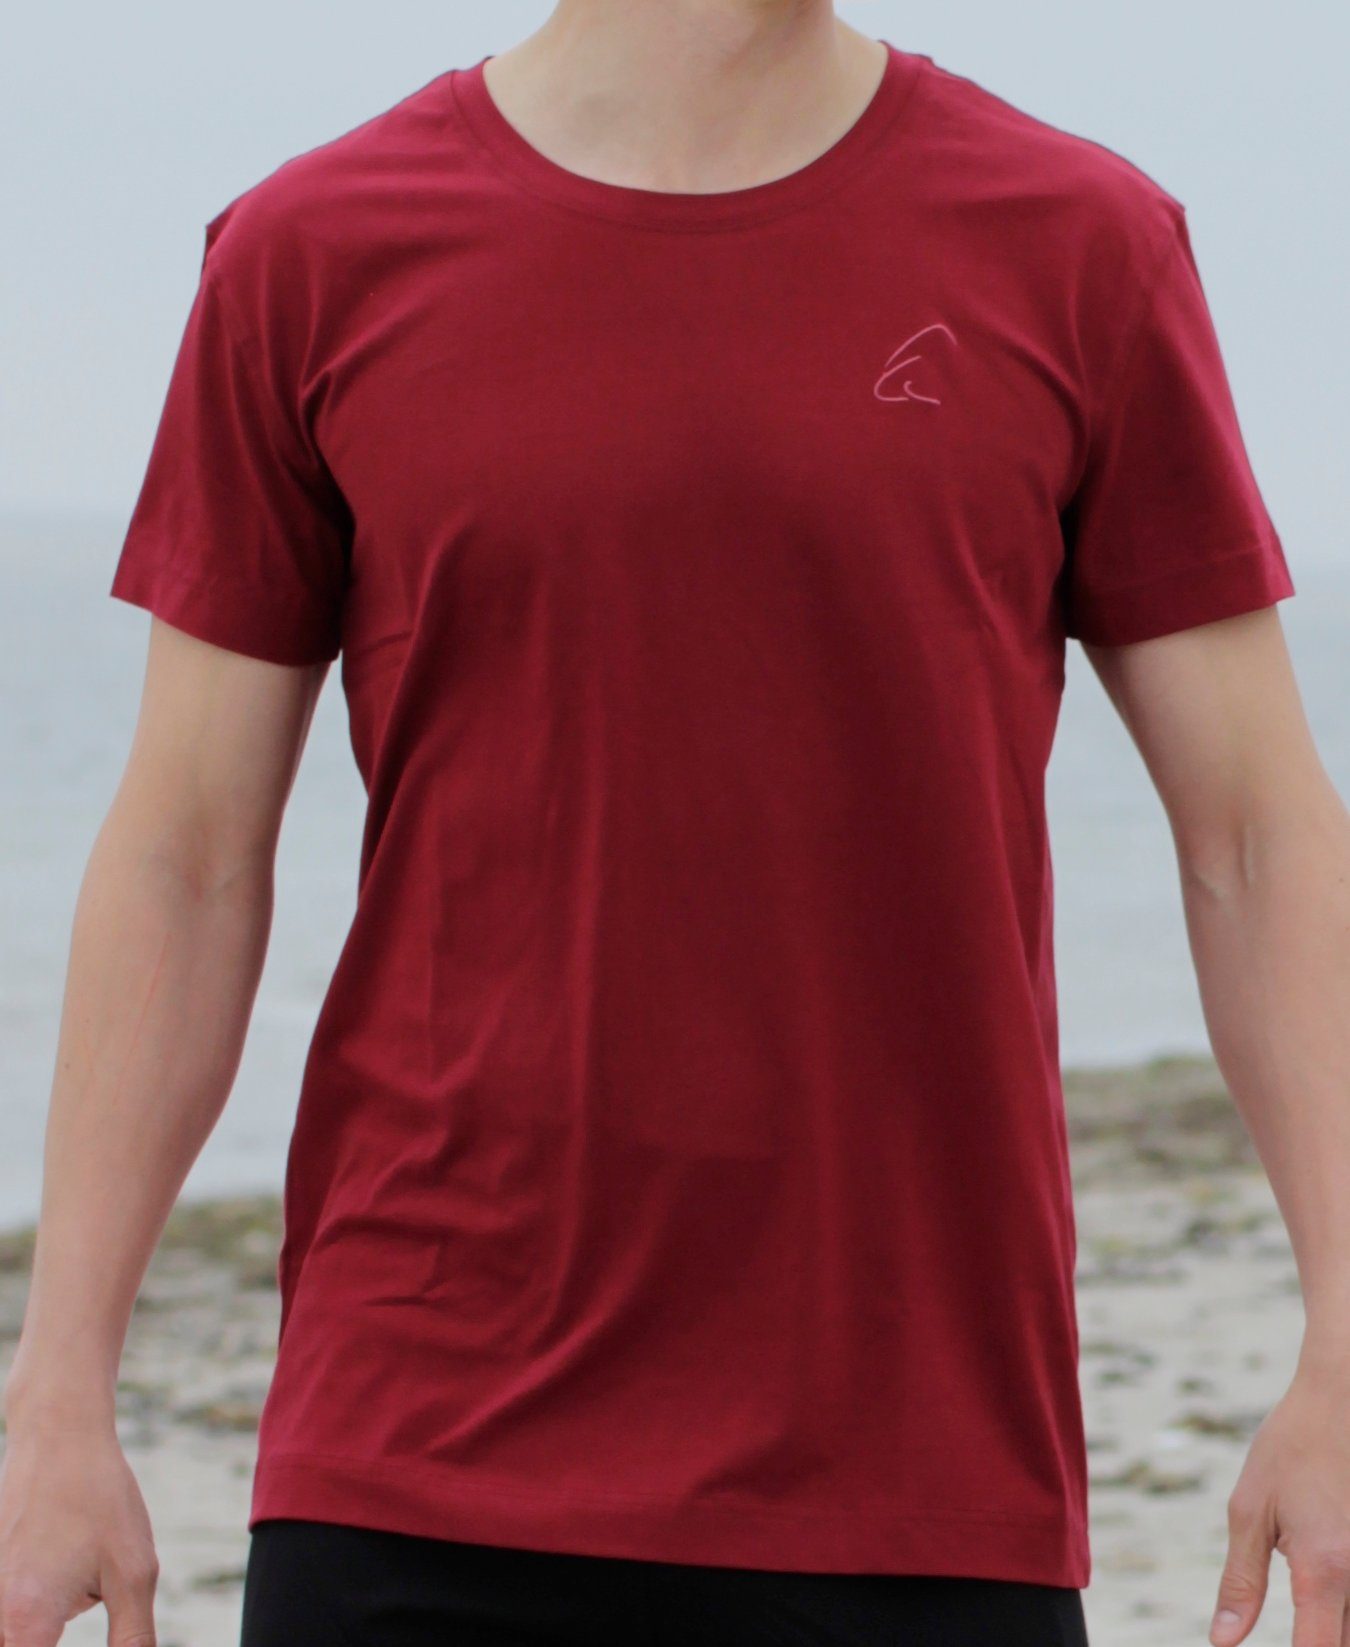 Herren leicht geeignet Sommer kühlend, auch unisex, für Bhaalu T-Shirt gut im Yogashirt Granatrot ESPARTO